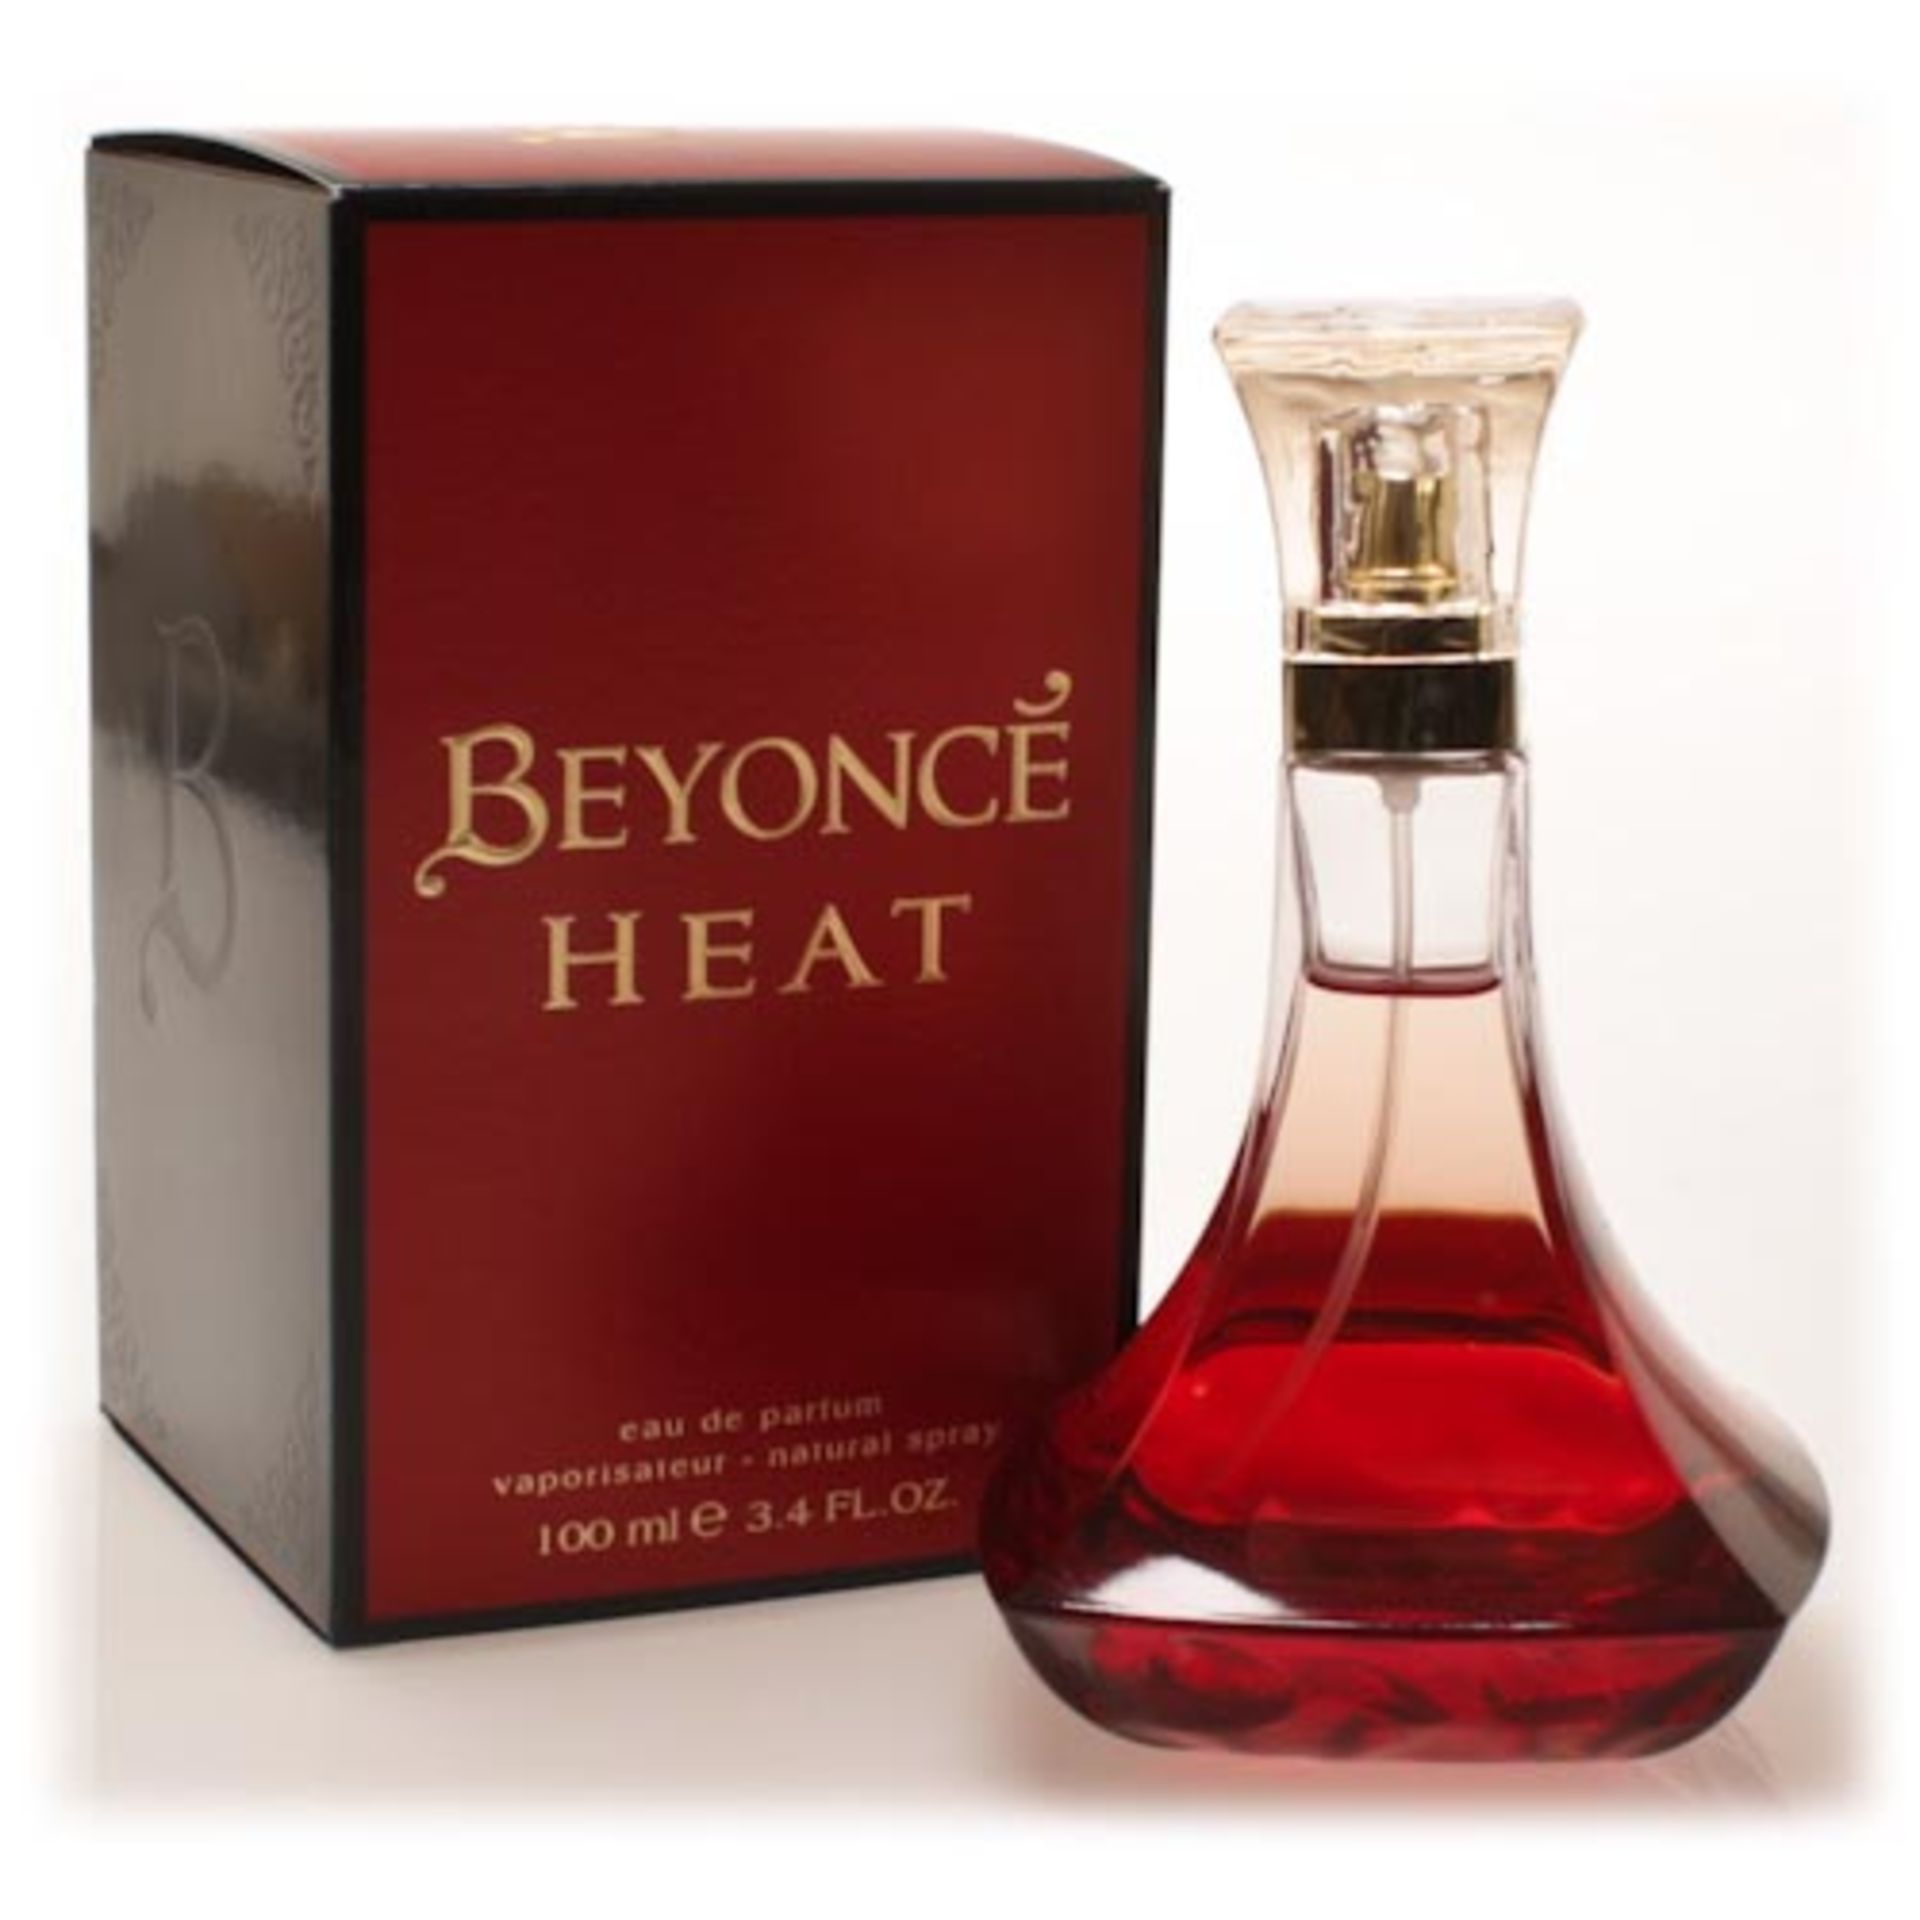 V Brand New Beyonce Heat Eau De Parfum 100ml RRP £32.00